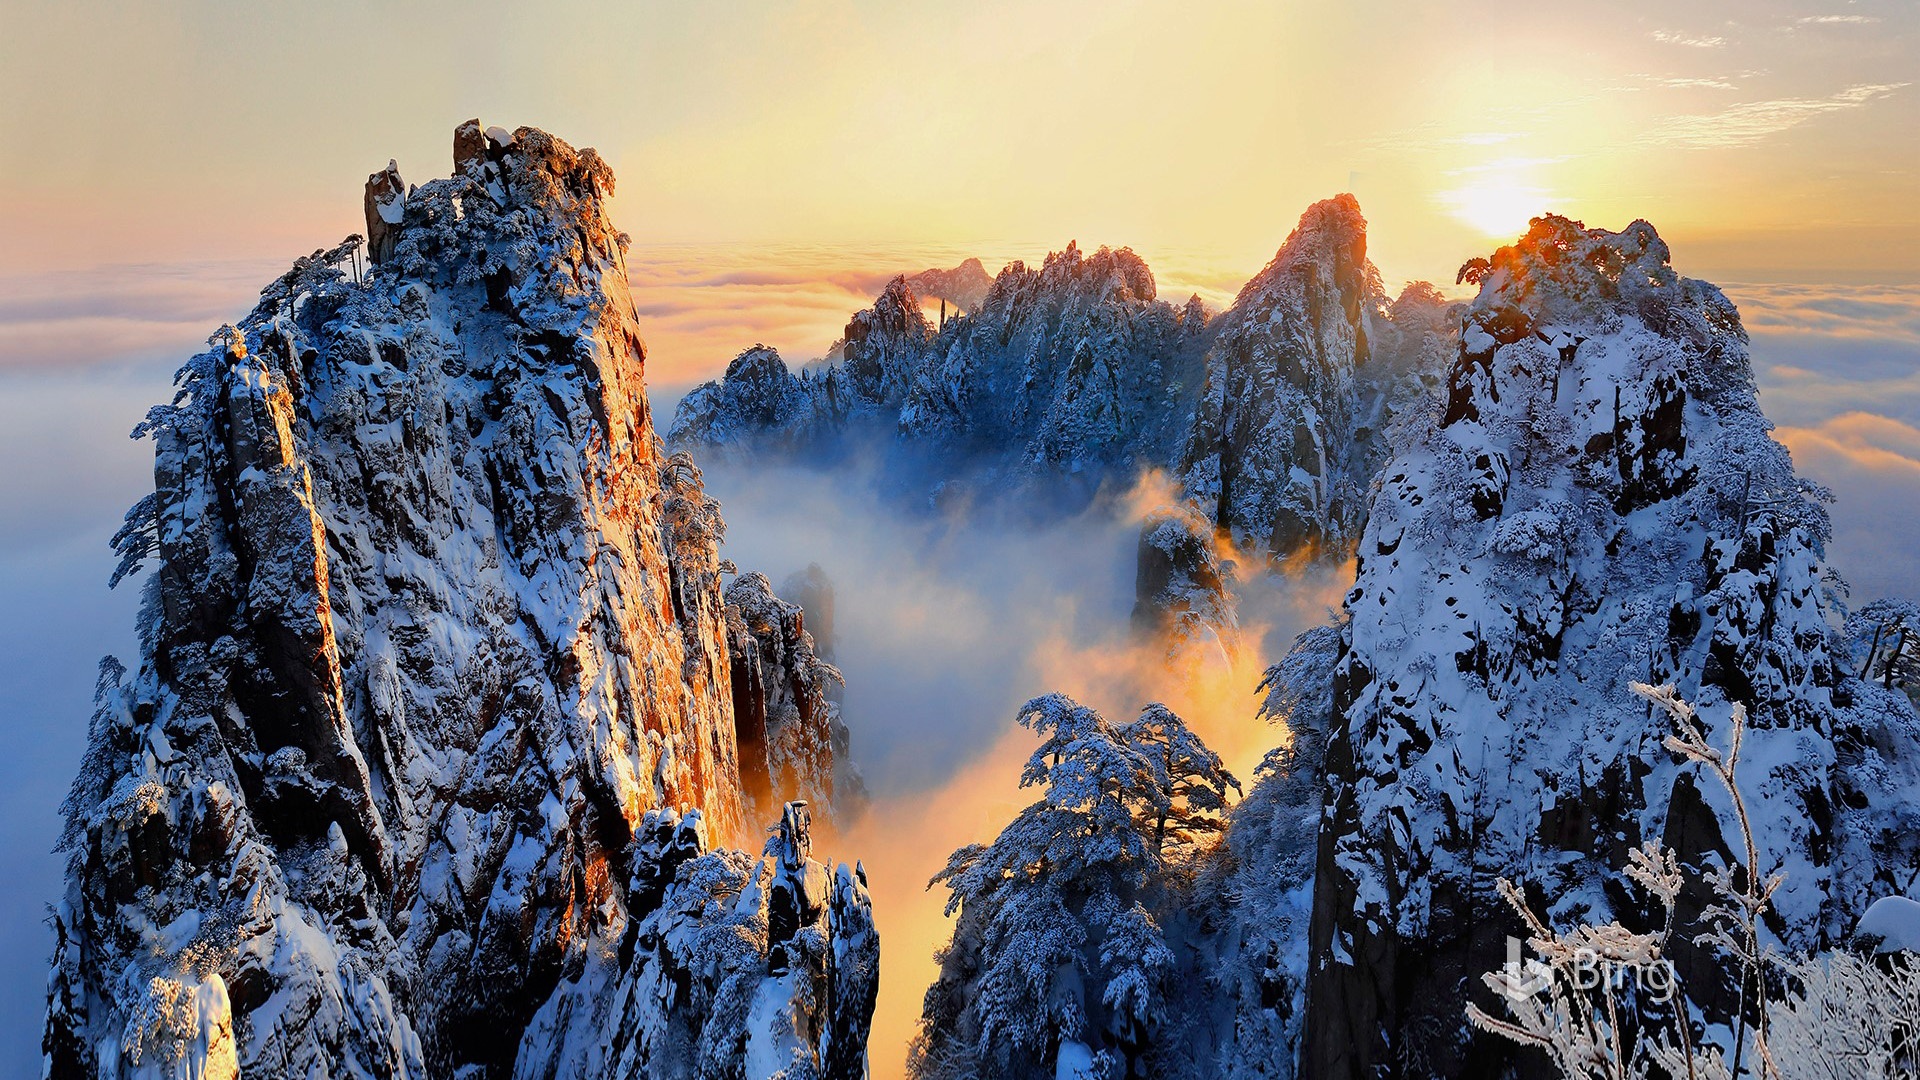 自然景观风景名胜安徽省黄山风景区雪景桌面壁纸壁纸